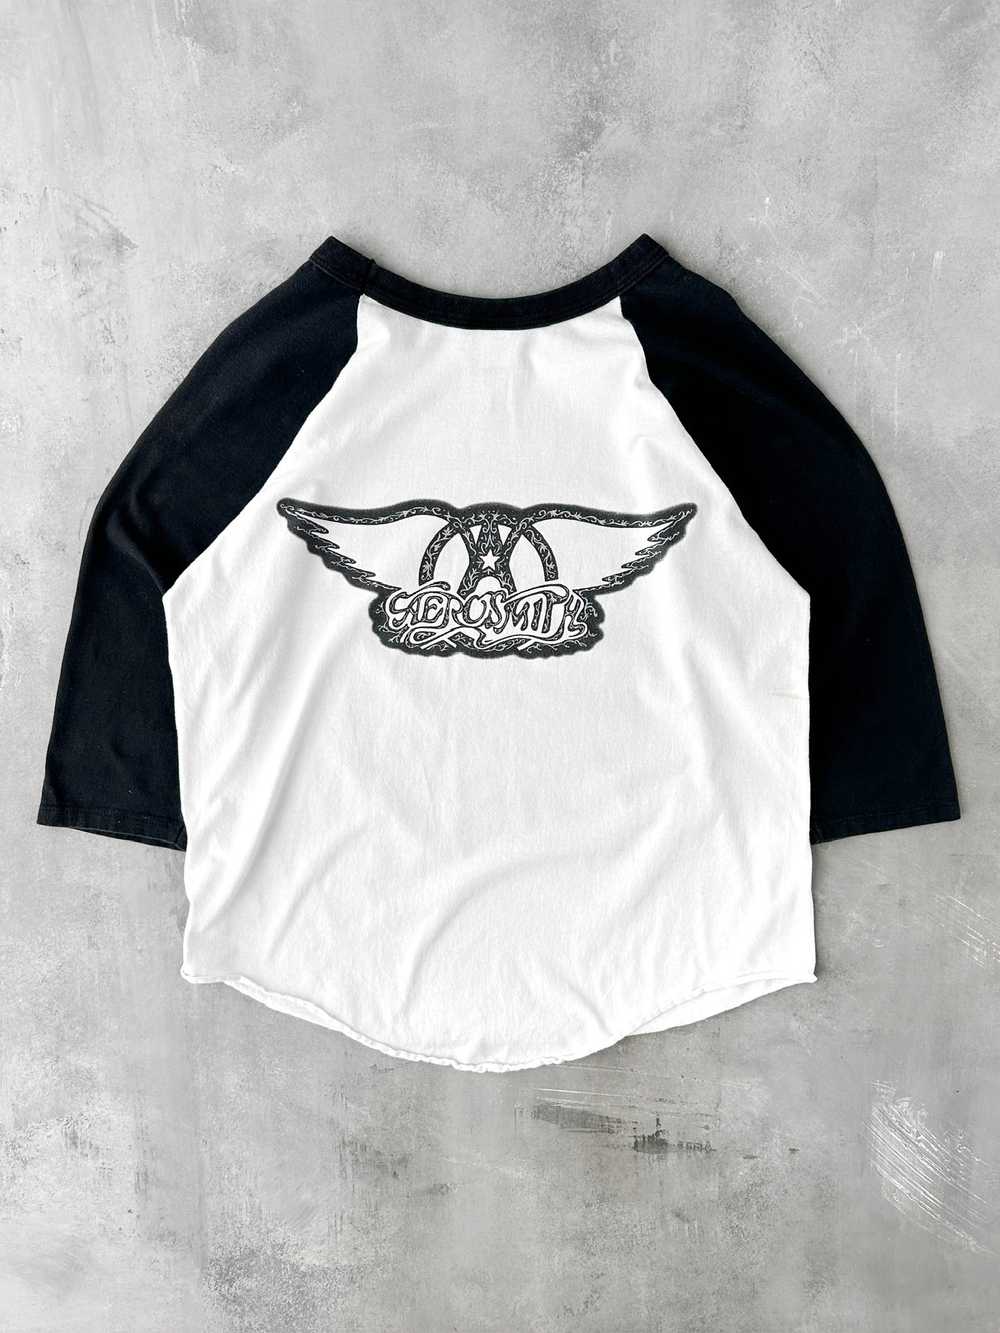 Aerosmith Baseball T-Shirt '97 - Large - image 5